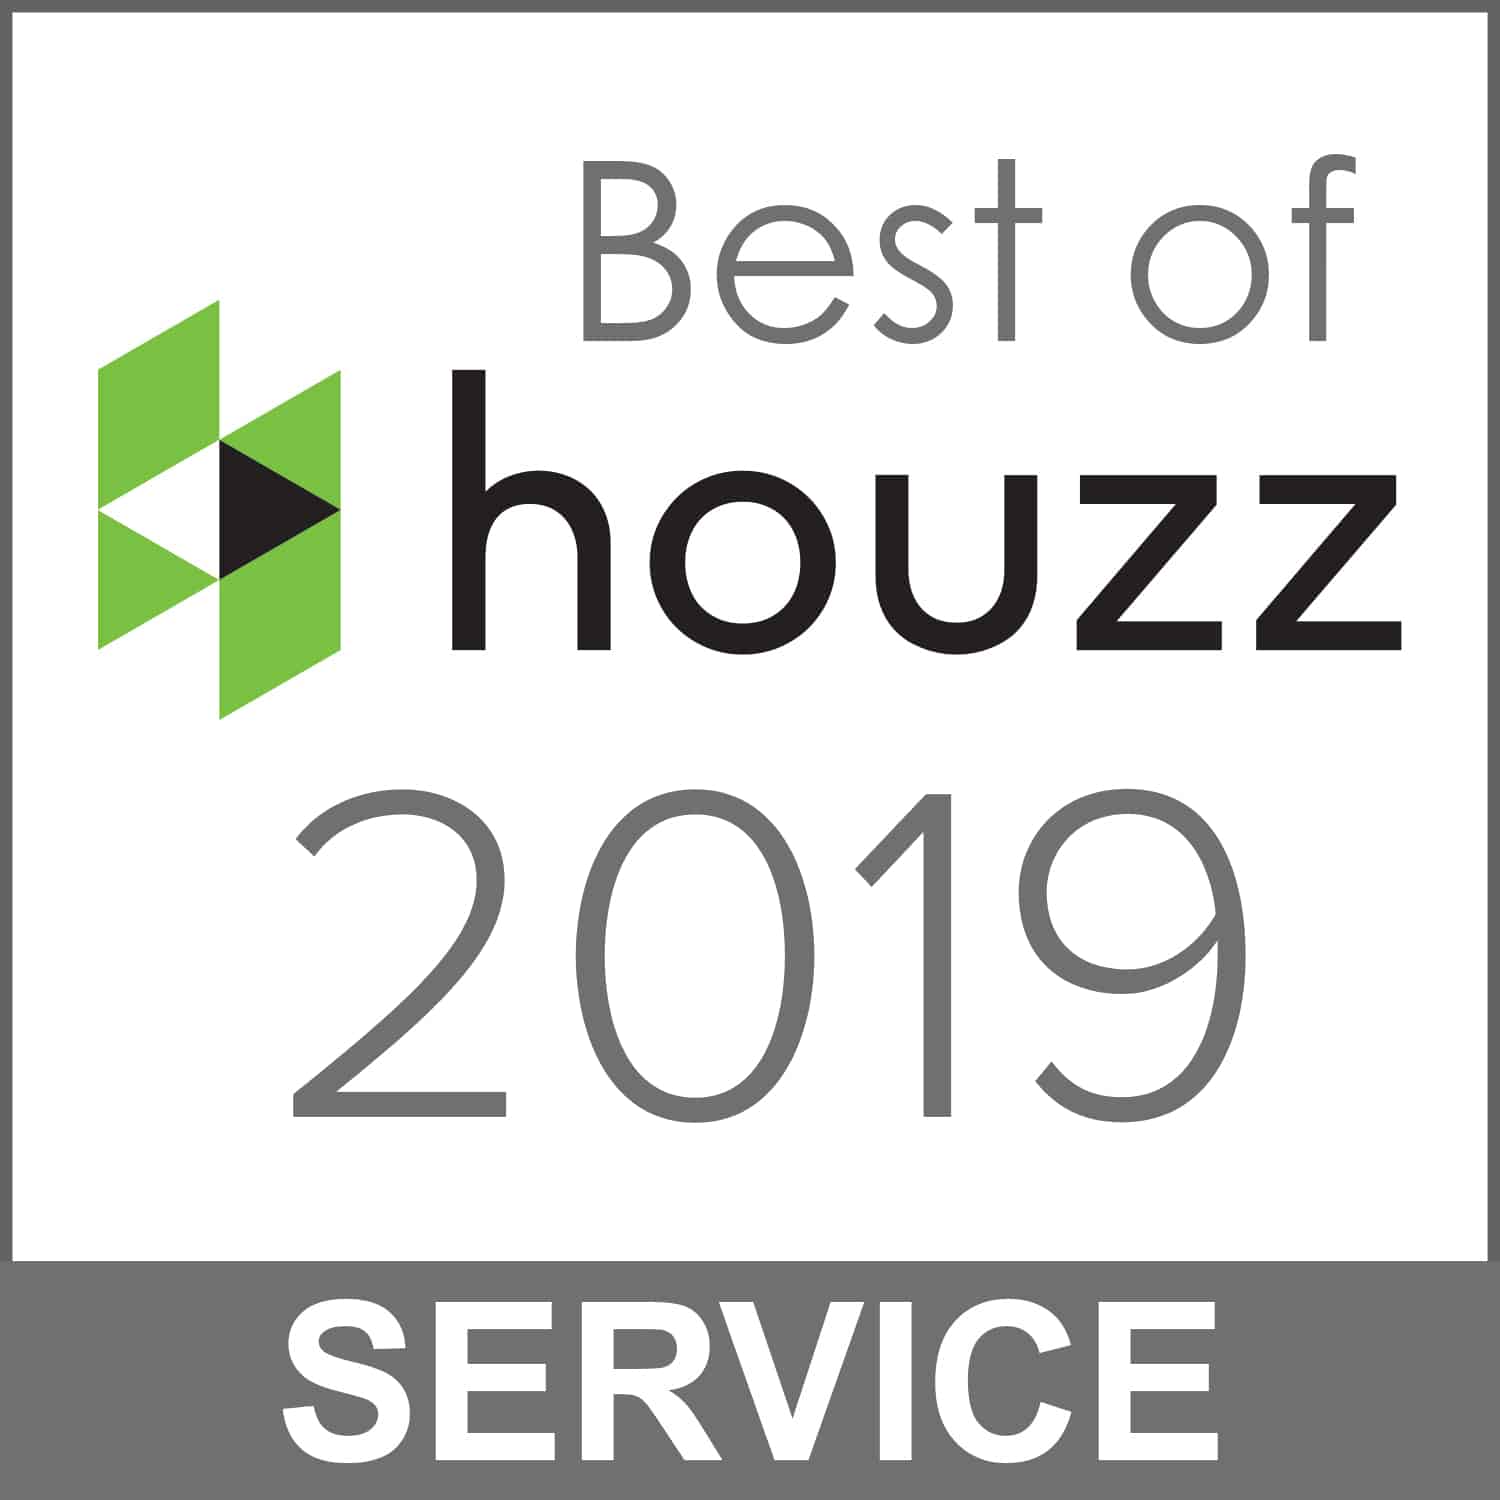 Best of houzz 2019 interior design service.